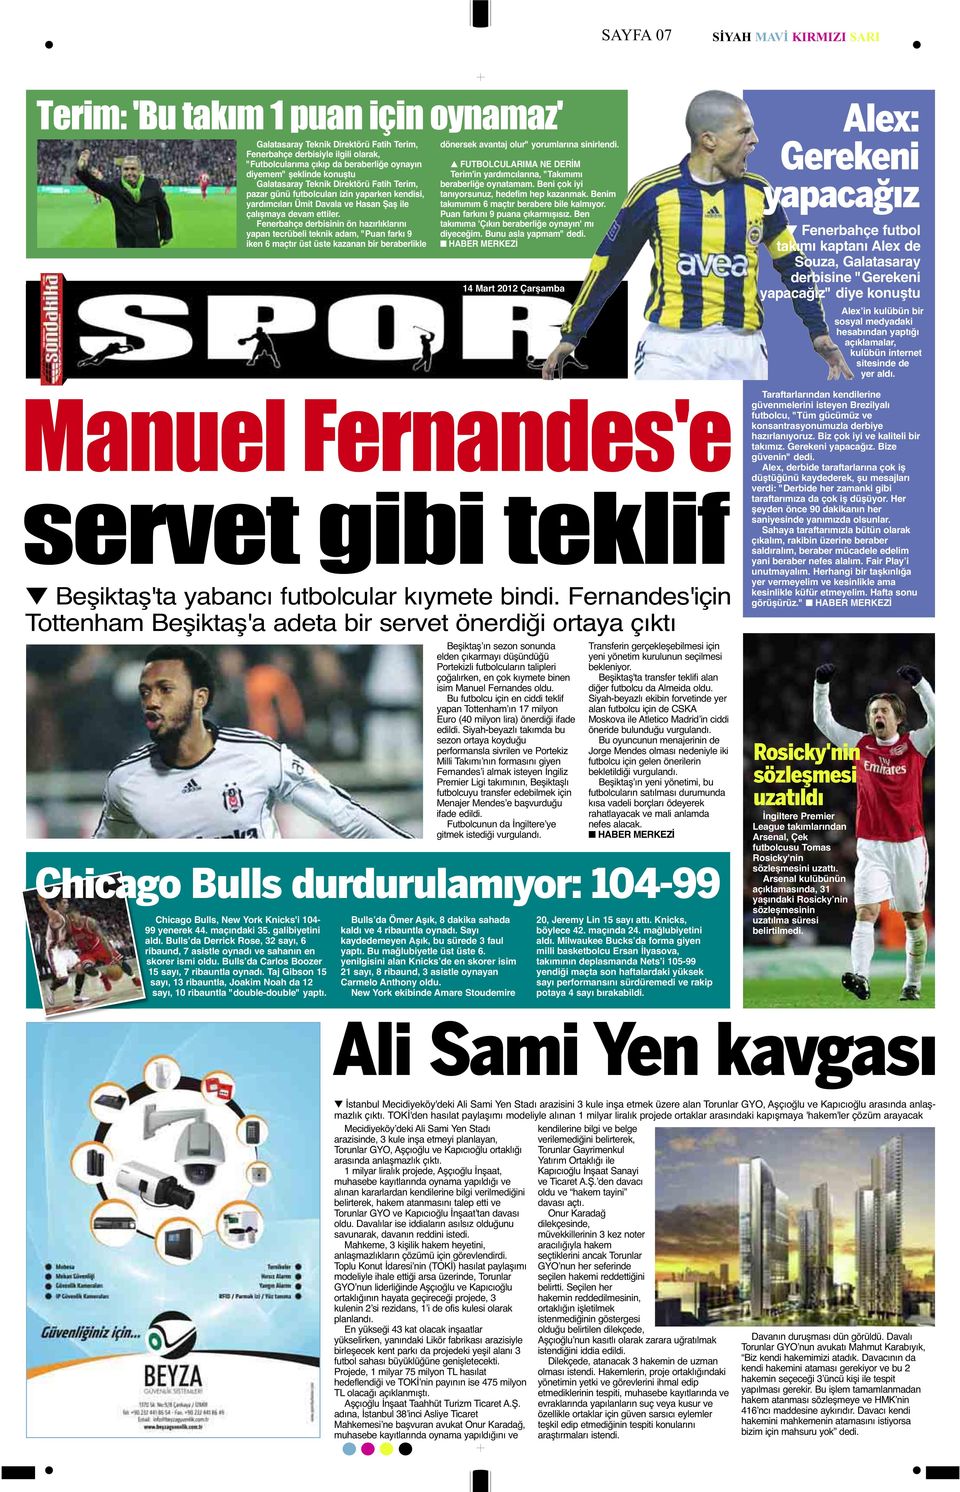 Fenerbahçe derbisinin ön hazırlıklarını yapan tecrübeli teknik adam, "Puan farkı 9 iken 6 maçtır üst üste kazanan bir beraberlikle dönersek avantaj olur" yorumlarına sinirlendi.